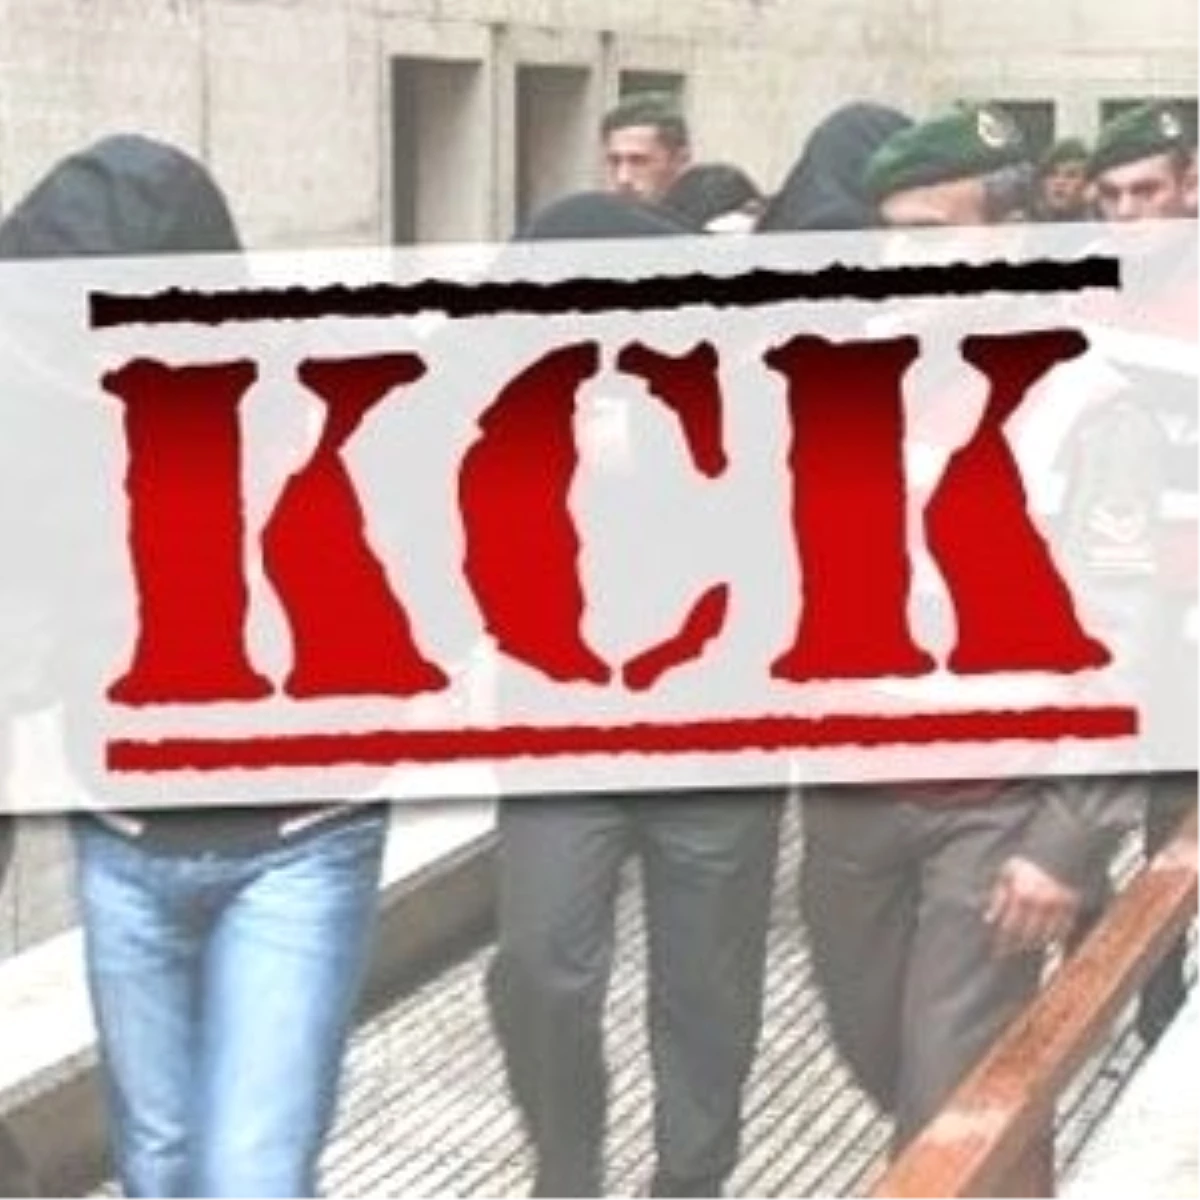 Protesto Kck Davasını Perşembe Gününe Erteletti